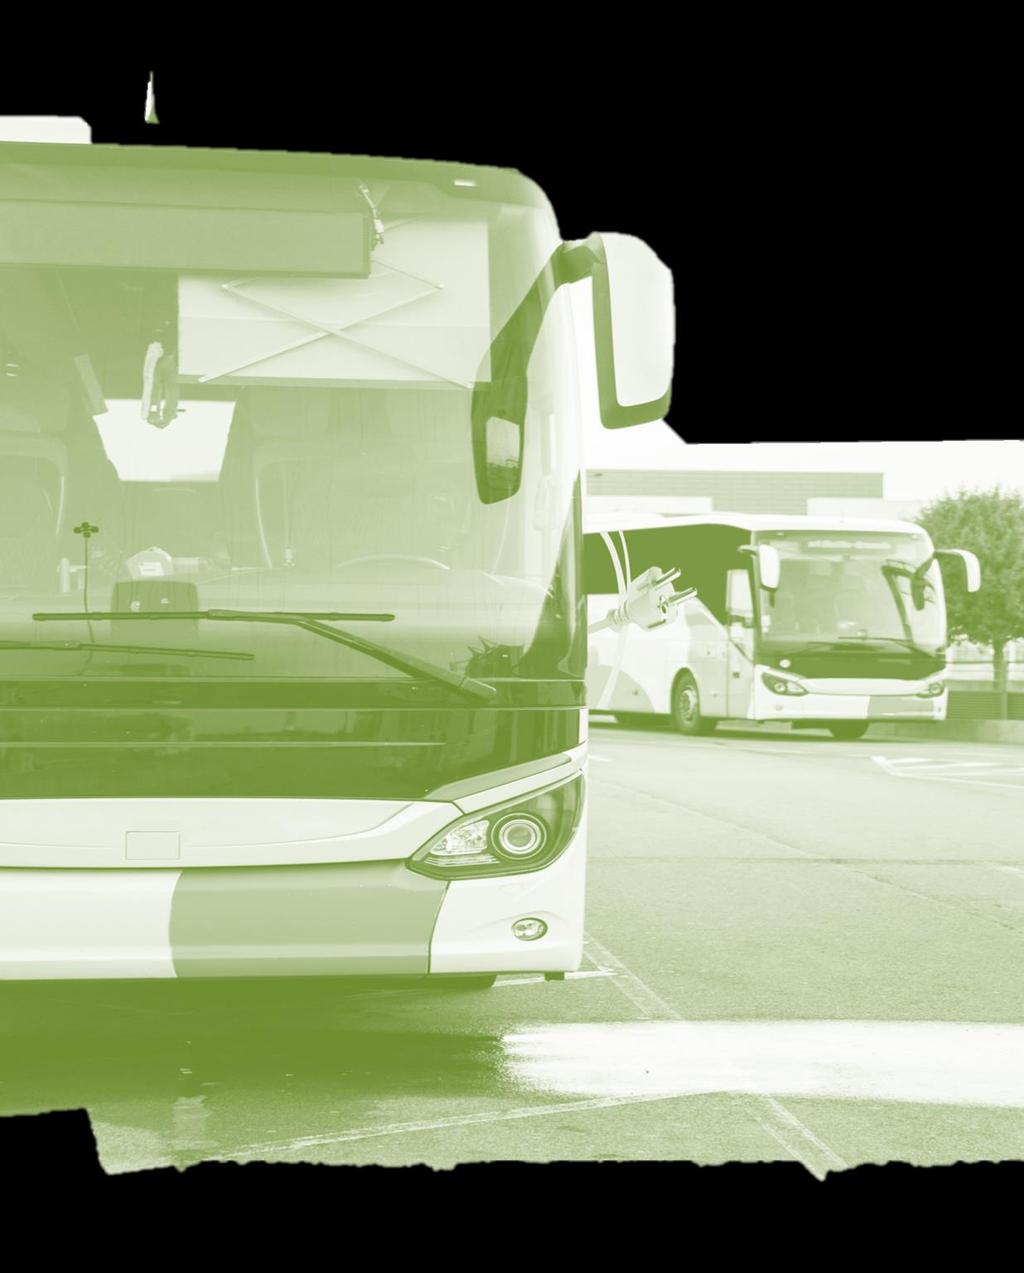 Analiza kosztów i korzyści związanych z wykorzystaniem przy świadczeniu usług komunikacji miejskiej autobusów